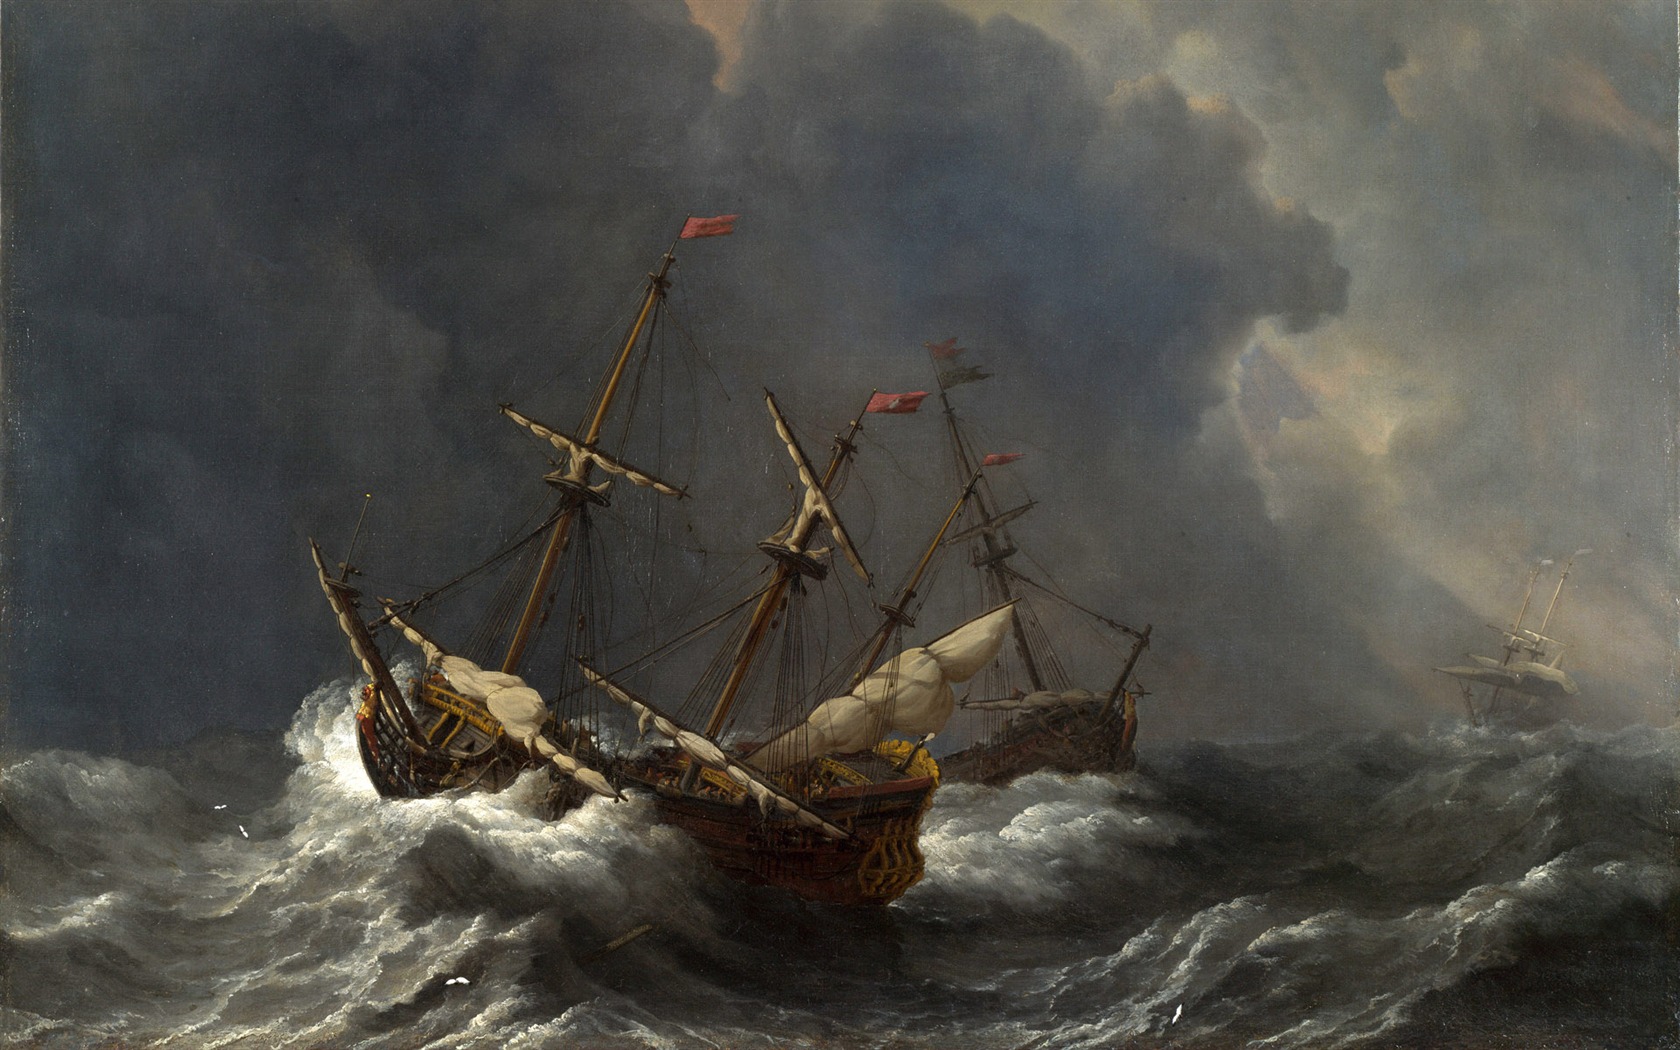 伦敦画廊帆船 壁纸(二)9 - 1680x1050